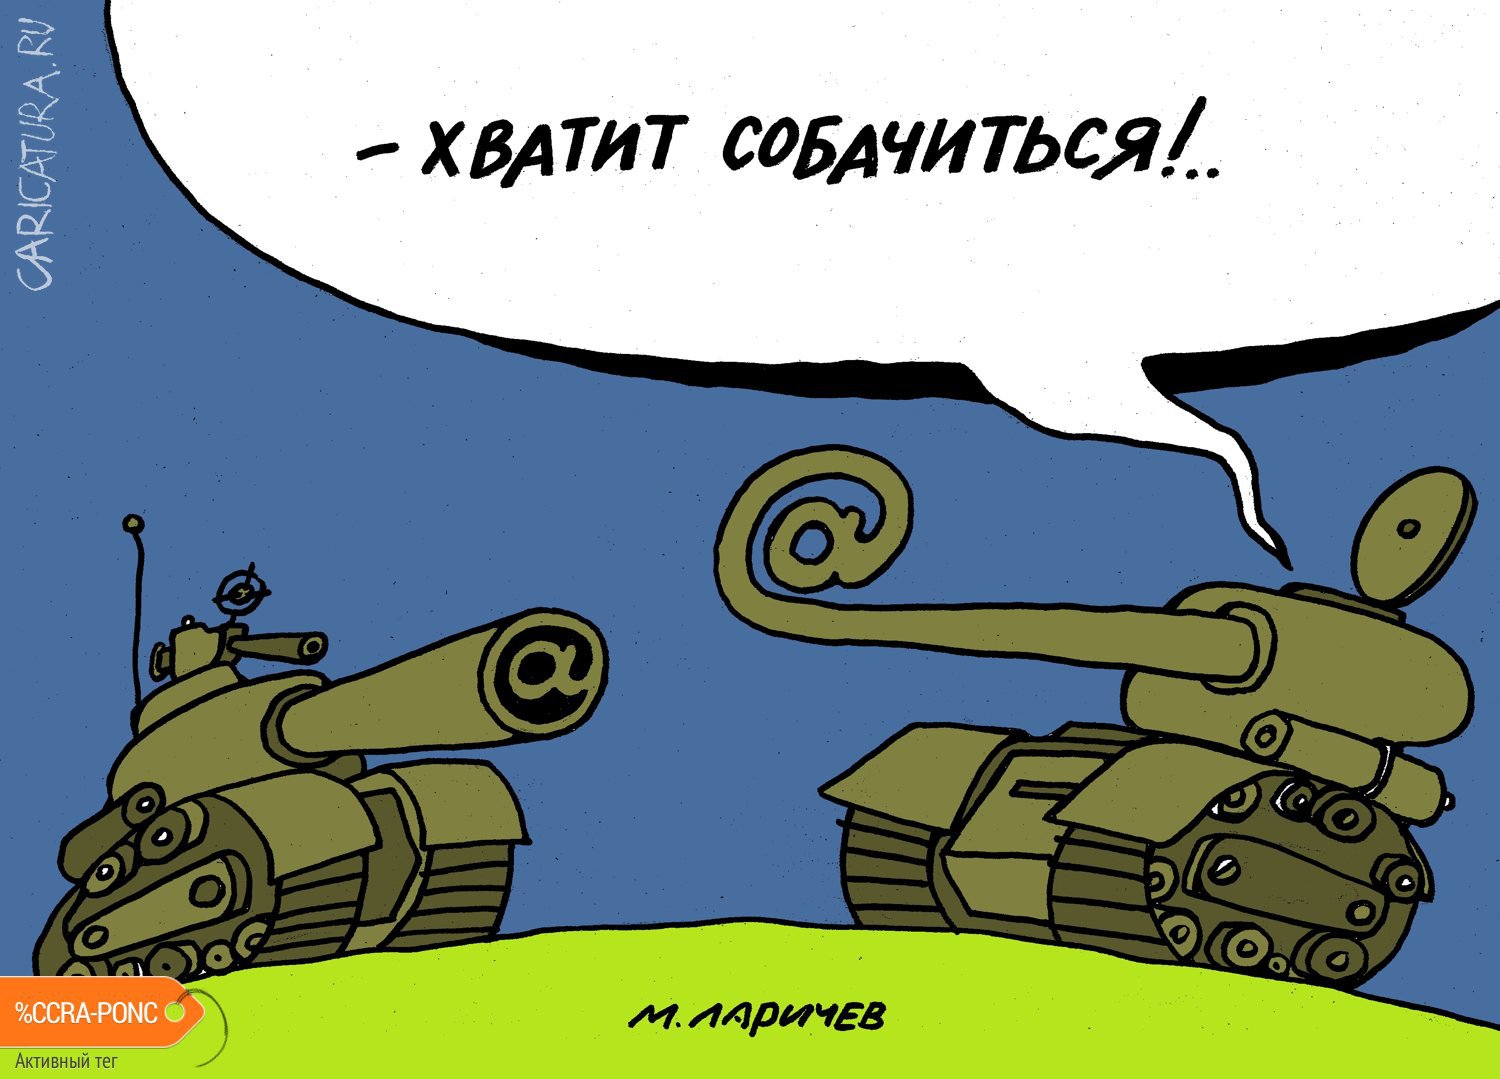 Карикатура "Хватить собачиться", Михаил Ларичев